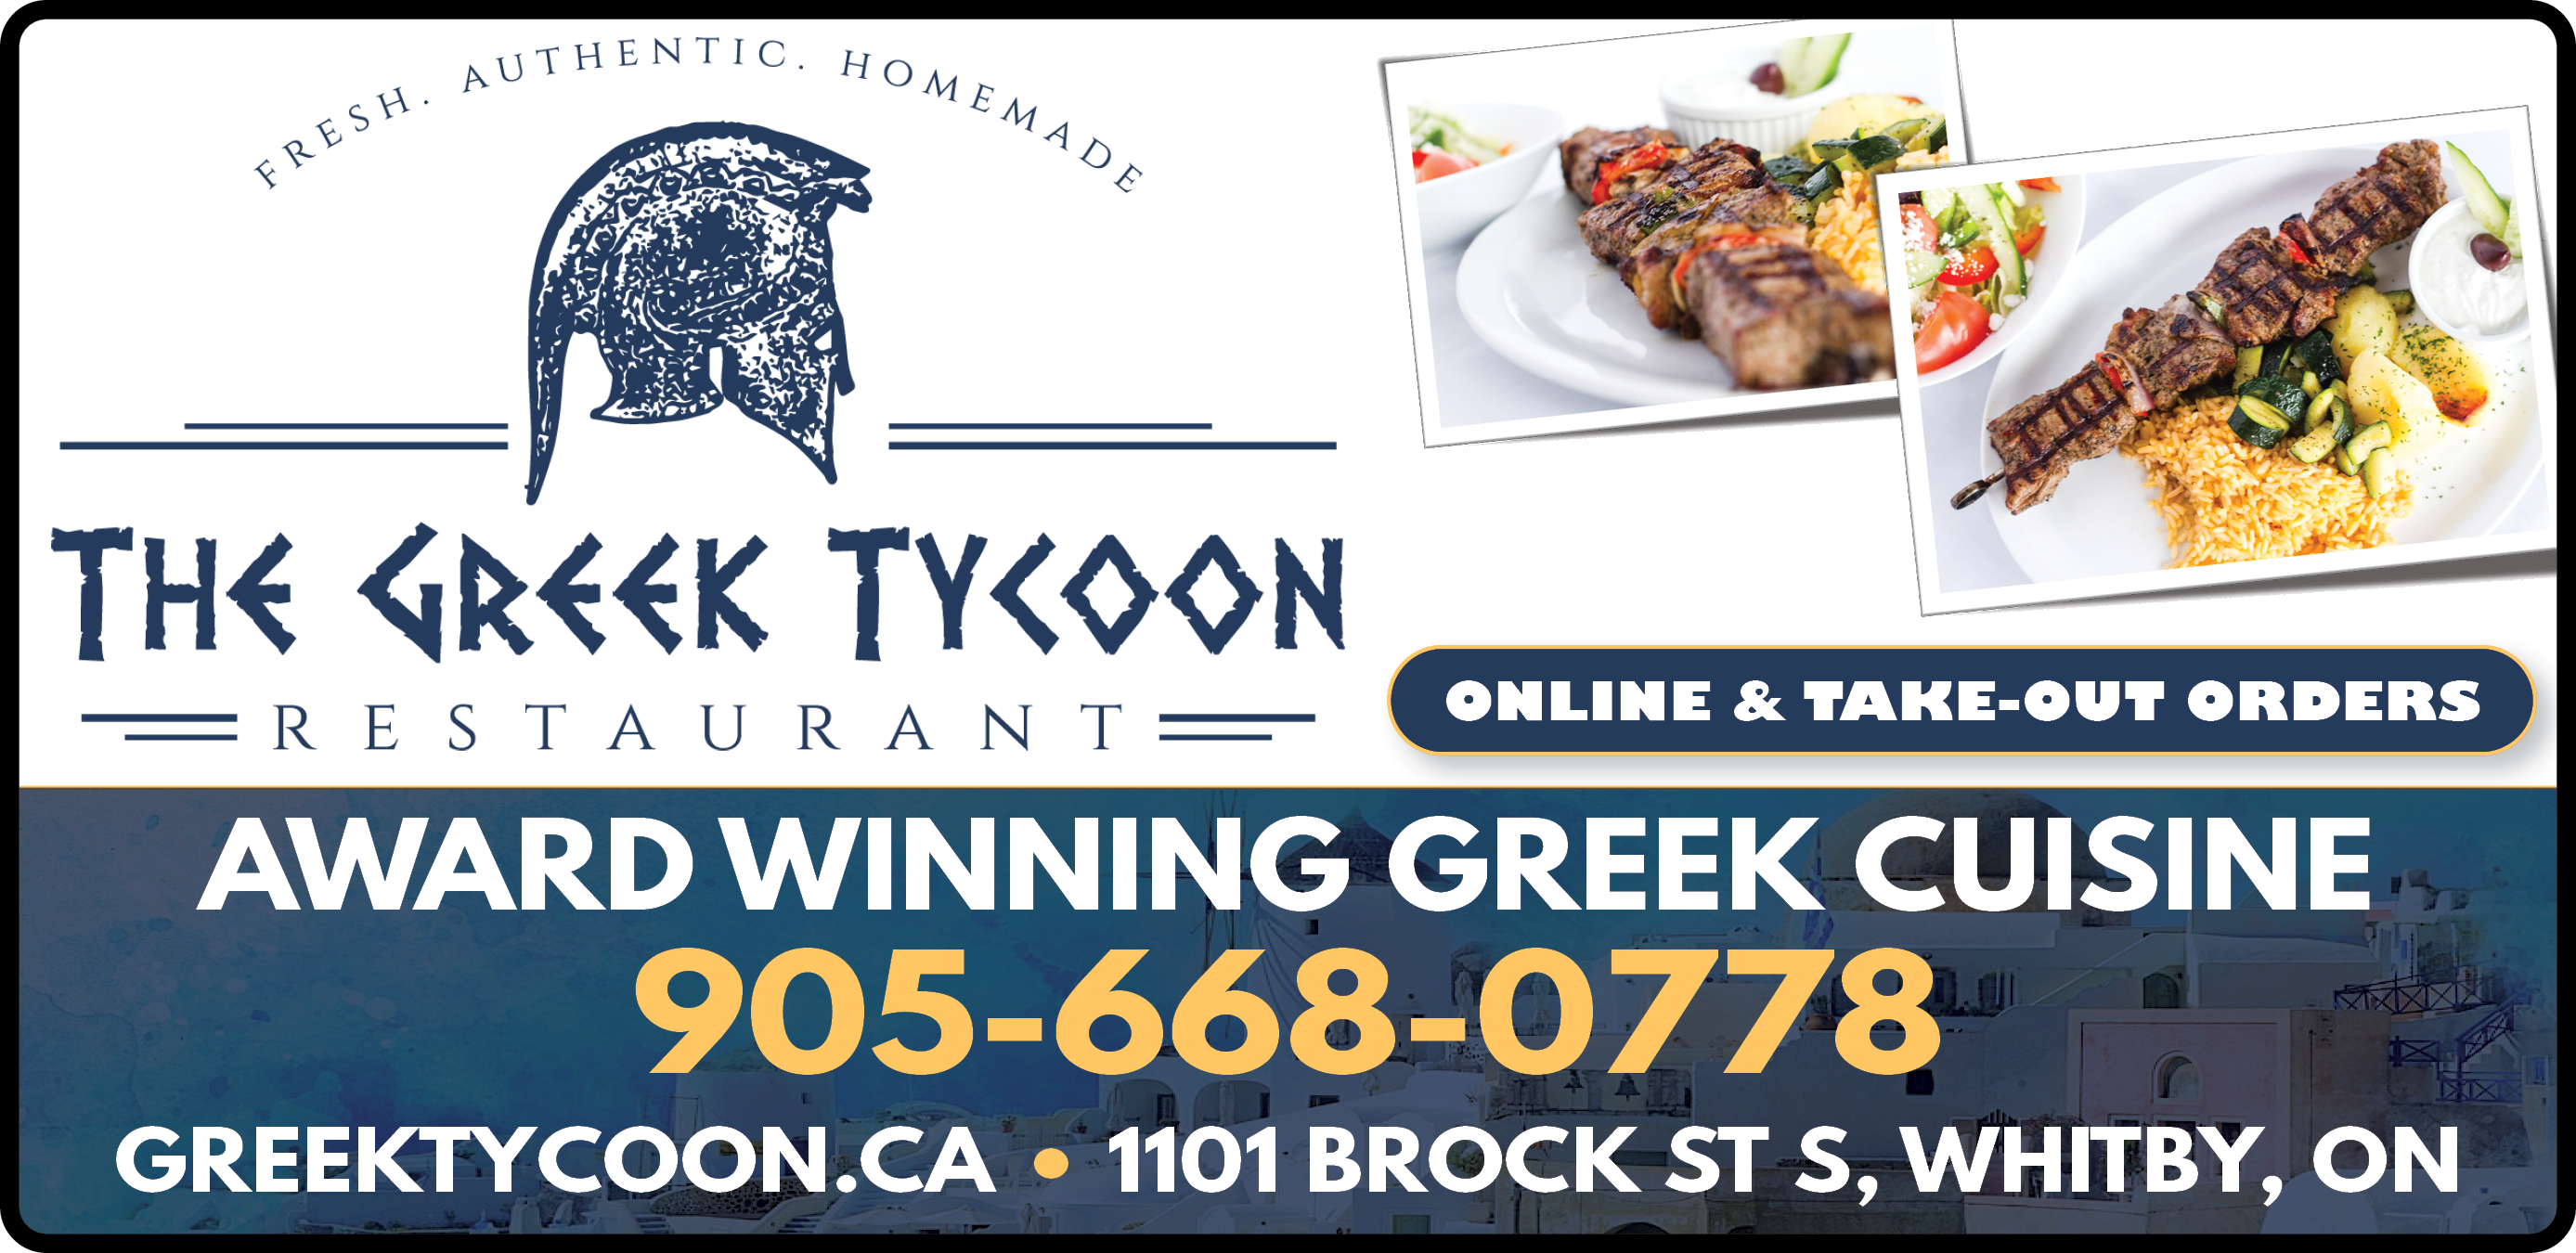 Greek Tycoon Restaurant